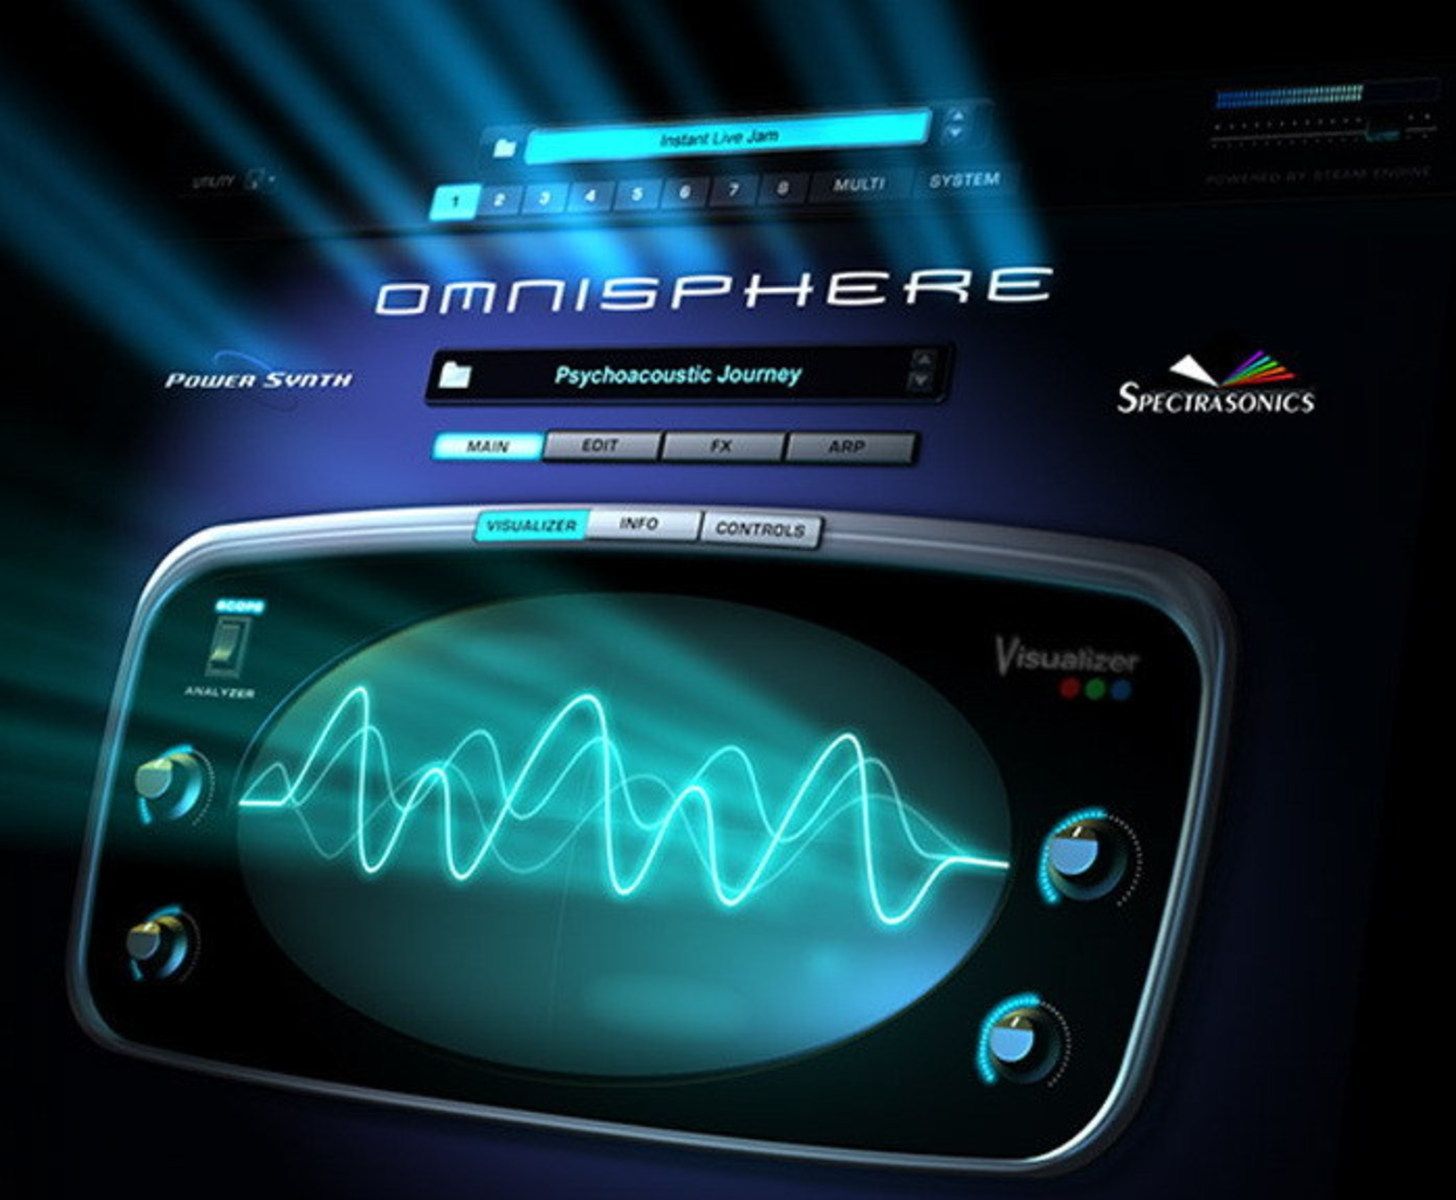 Omnisphere 2 challenge code keygen